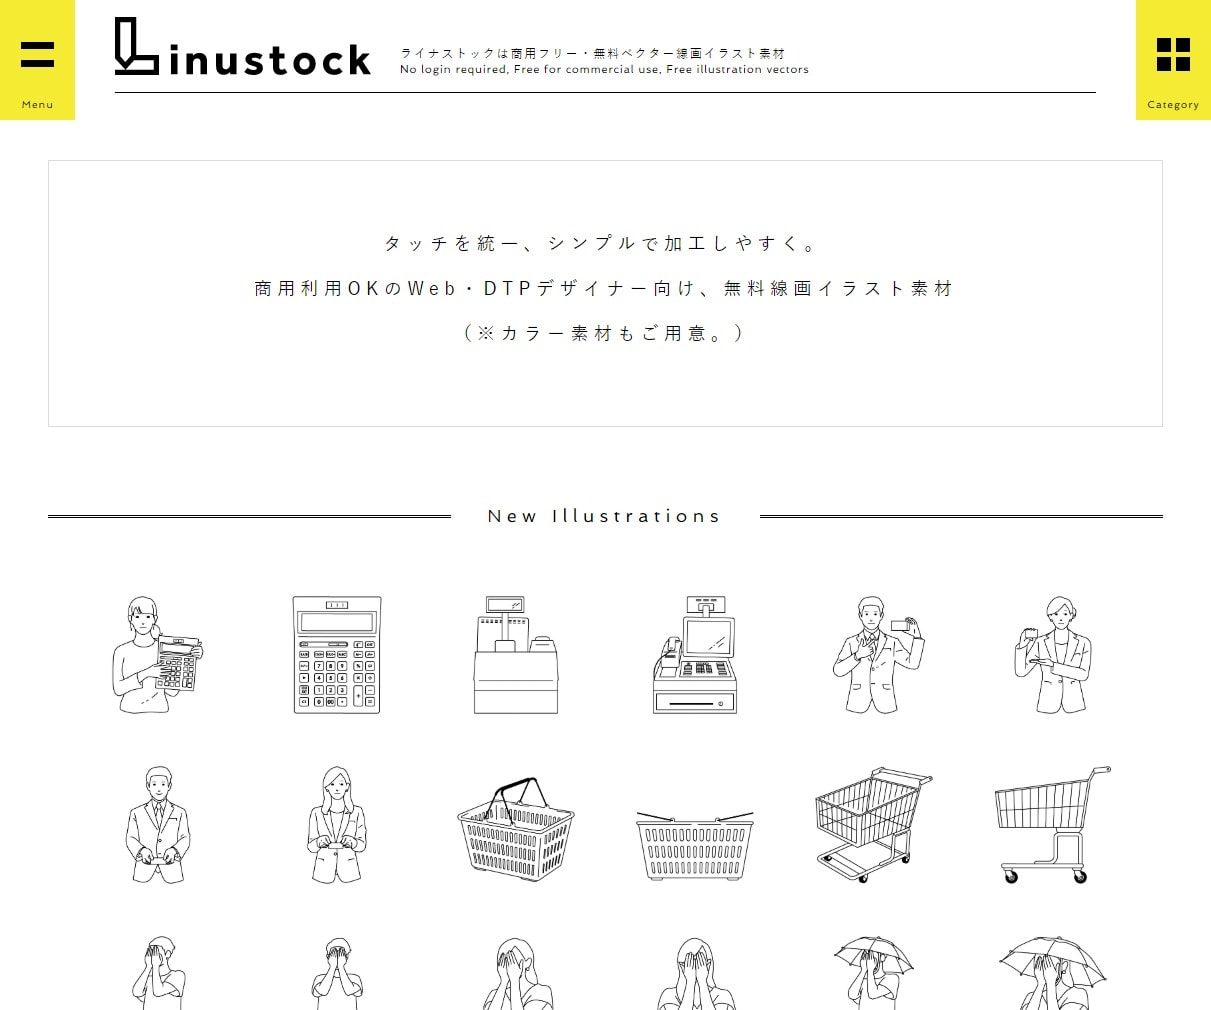 シンプルな線画イラスト素材は Linustock 無料ダウンロード デザインのこと Web Design Gallery